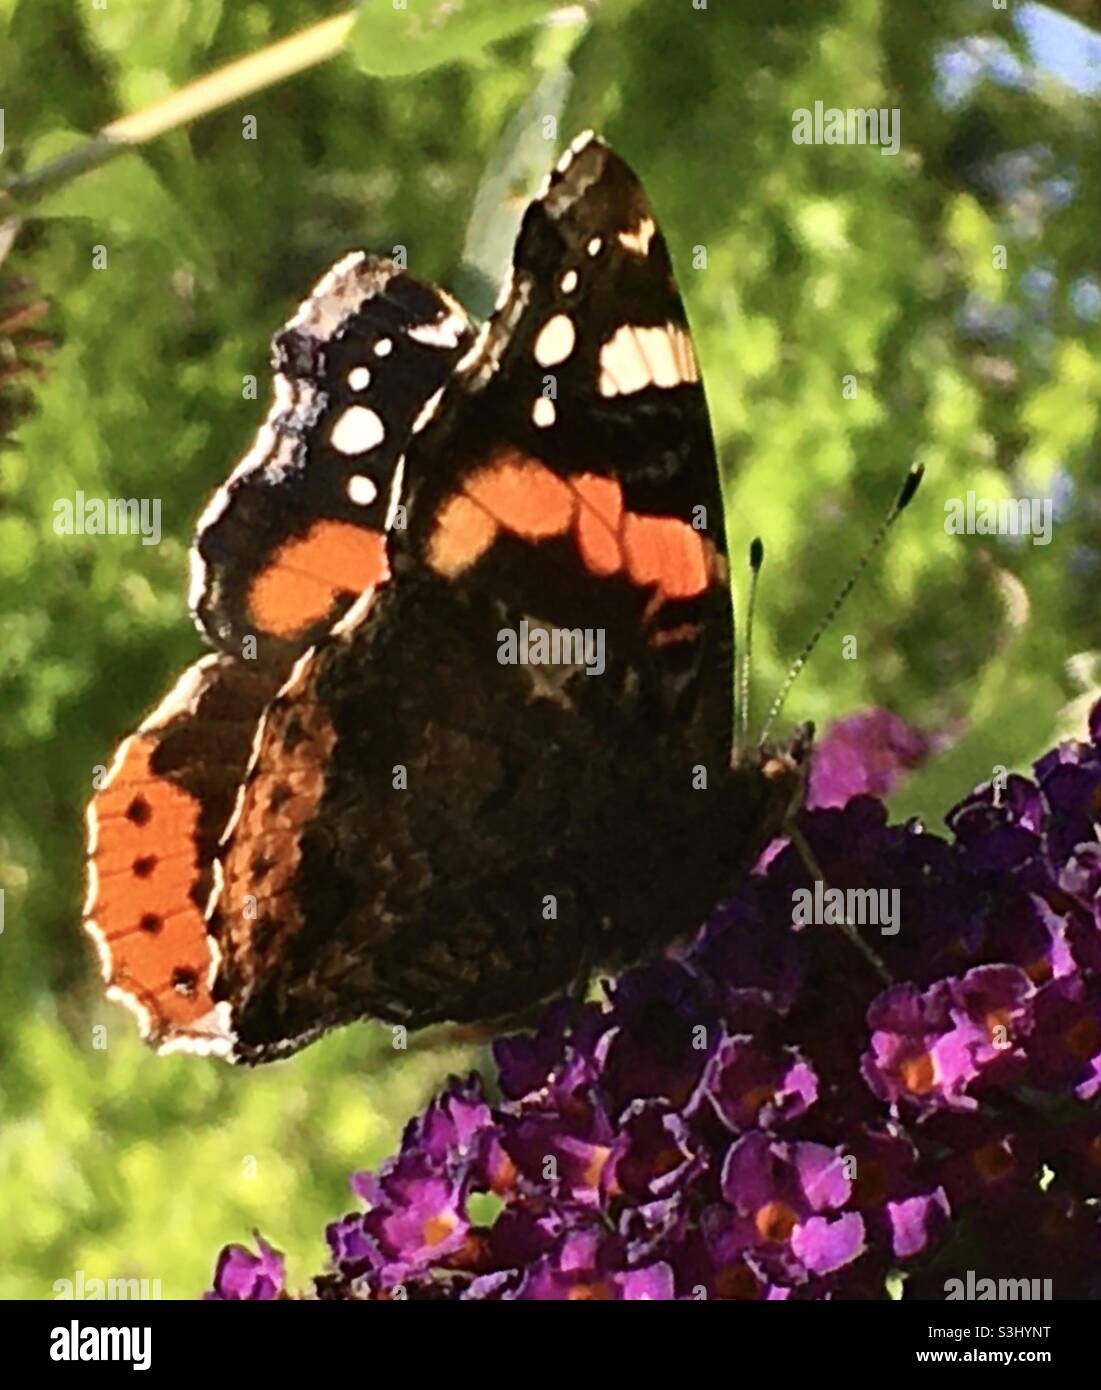 Butterfly, orange, purple, flower, tree, forest garden Stock Photo